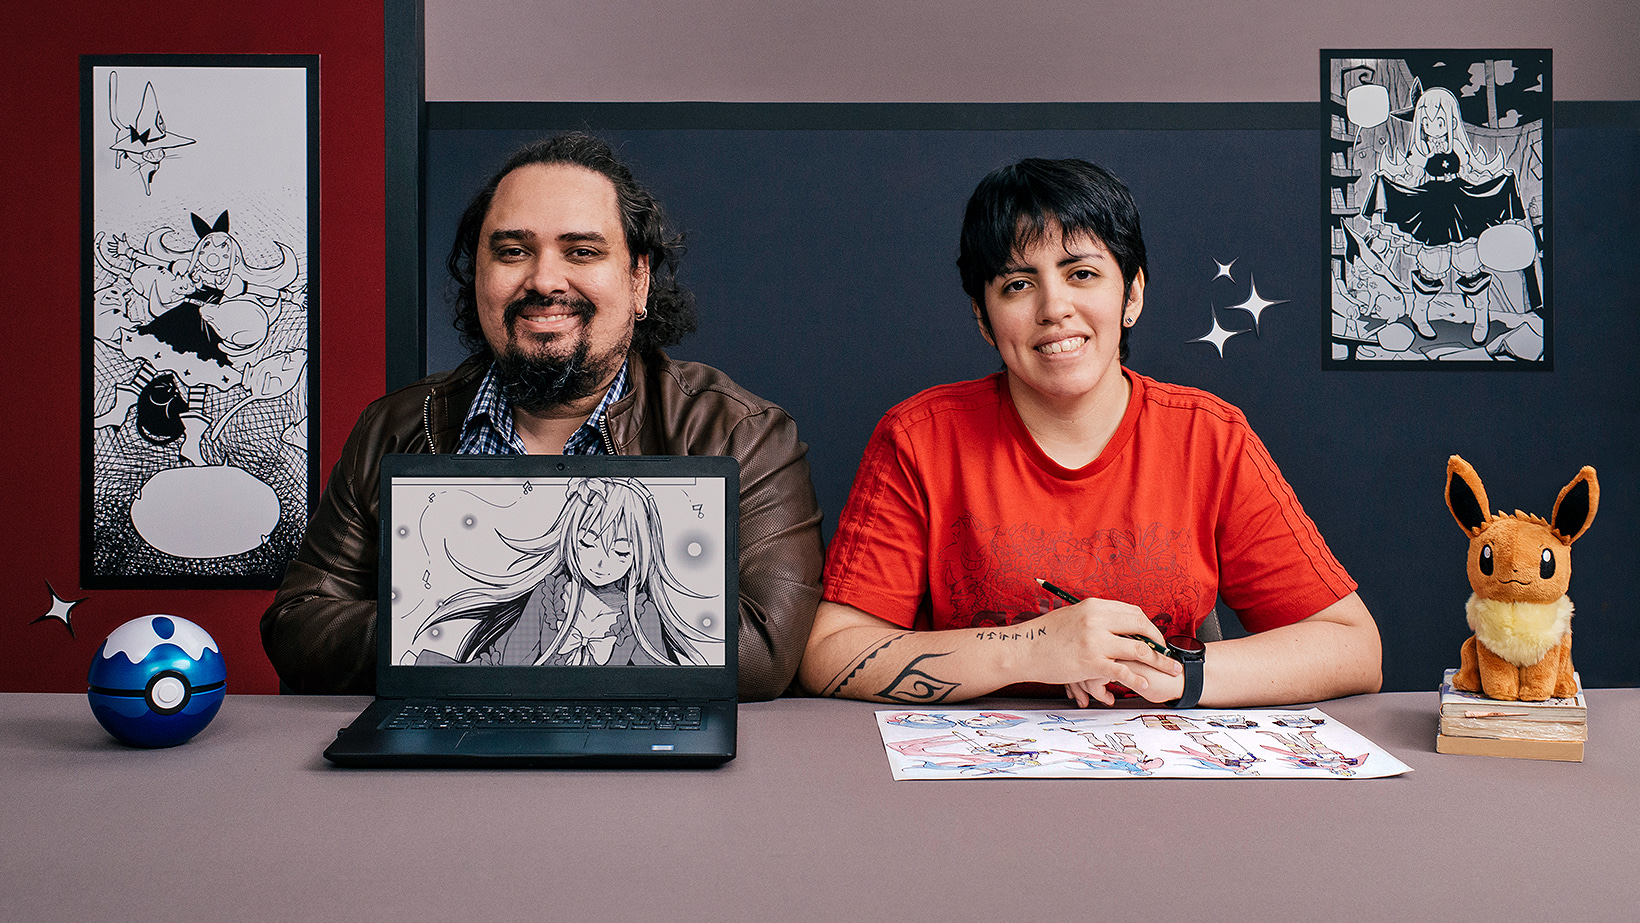 Nếu bạn yêu thích nghệ thuật Manga, hãy đăng ký khóa học trực tuyến vẽ nhân vật Manga từ đầu do EUDETENIS cung cấp. Với bức tranh 4D tuyệt đẹp được thực hiện bởi đội ngũ các họa sĩ tài ba, bạn sẽ học được những kỹ năng cần thiết để trở thành một họa sĩ Manga chuyên nghiệp.